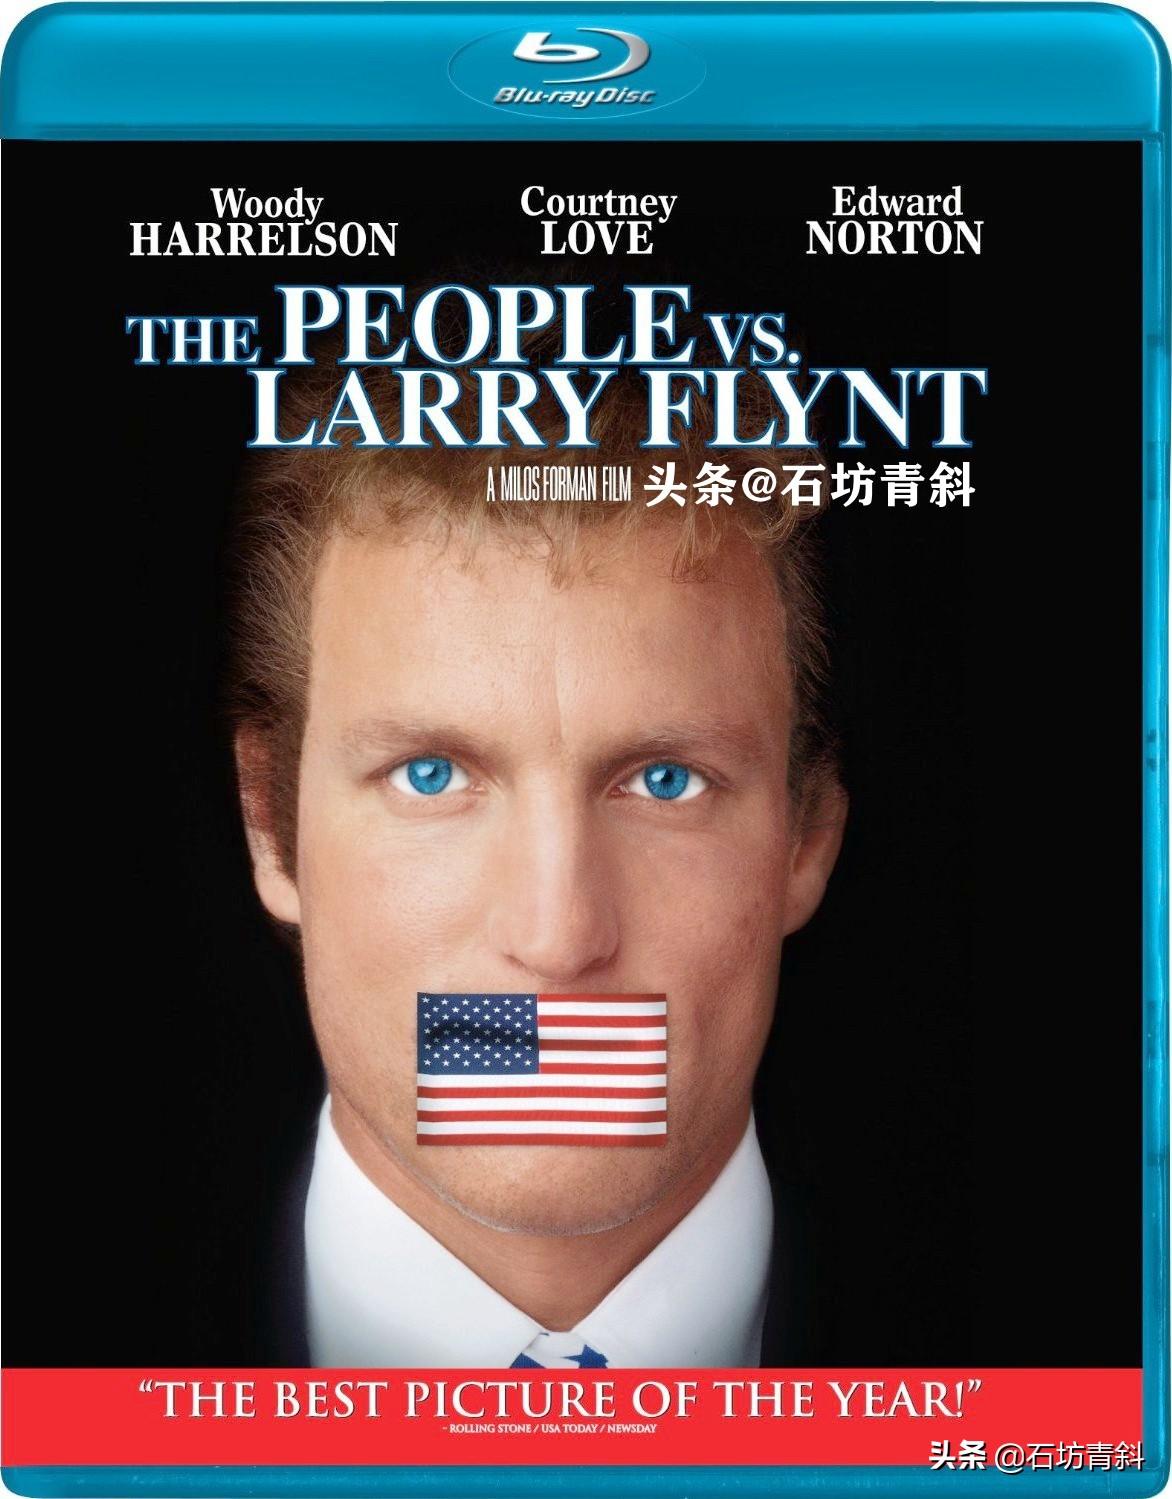 电影《情色风暴1997》(1996)美国蓝光版封套若不是《情色风暴1997/性书大亨/人民反对拉里·弗林特The People vs. Larry Flynt》(1996)这部影片，拉里·弗林特可能早被人们遗忘了。但是，在疫情如